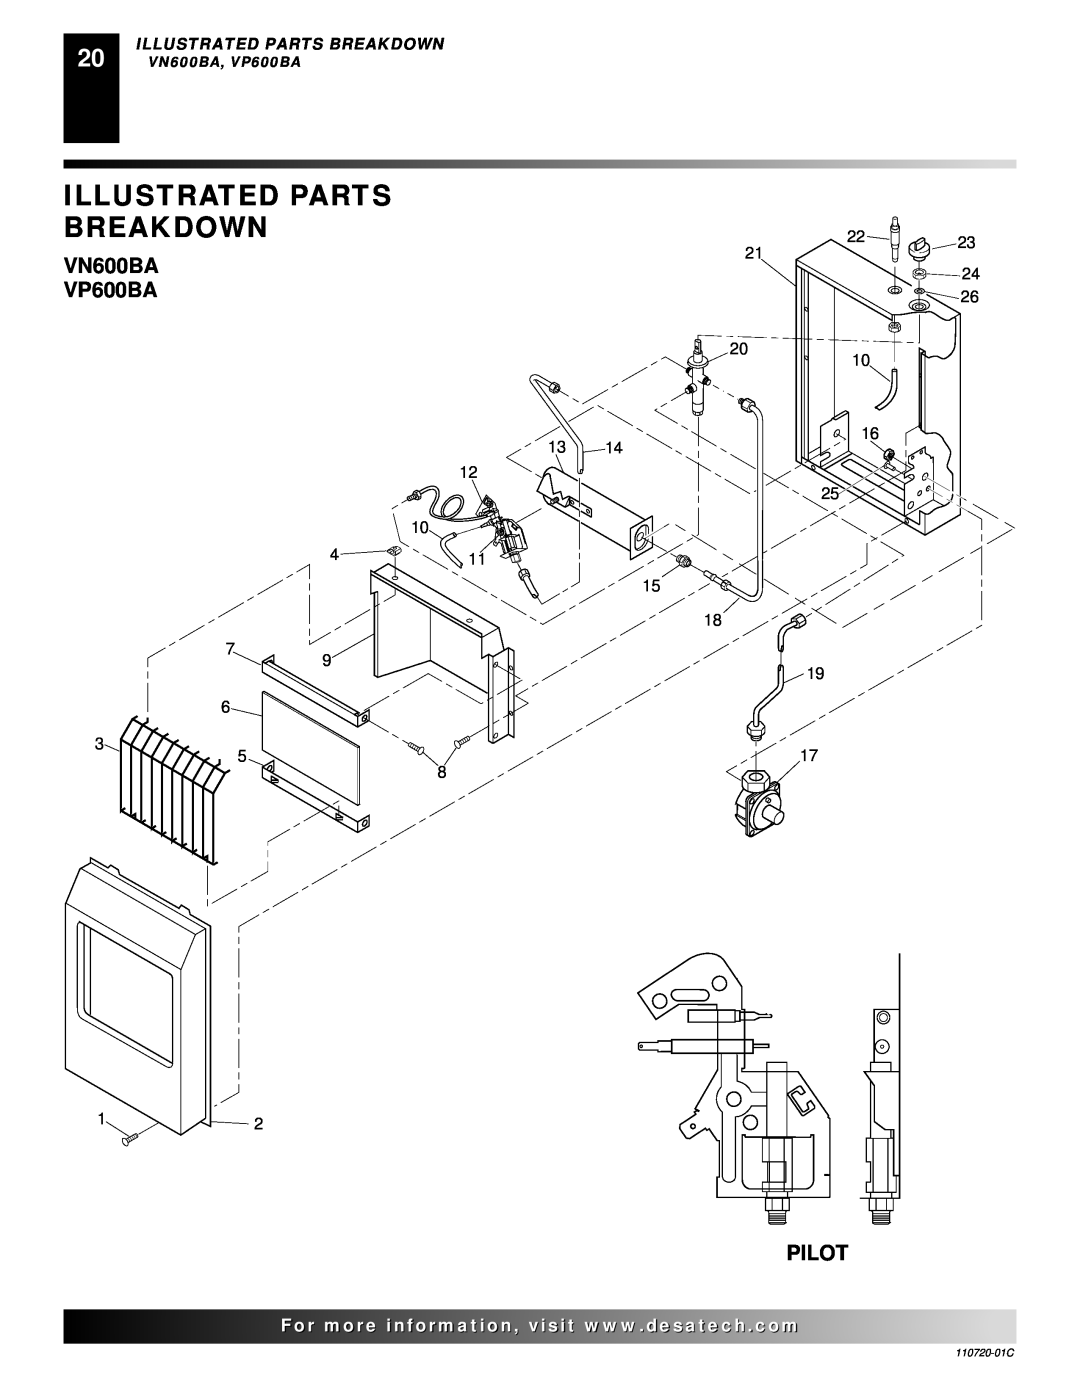 Desa VN10A installation manual Illustrated Parts Breakdown, VN600BA VP600BA, Pilot 